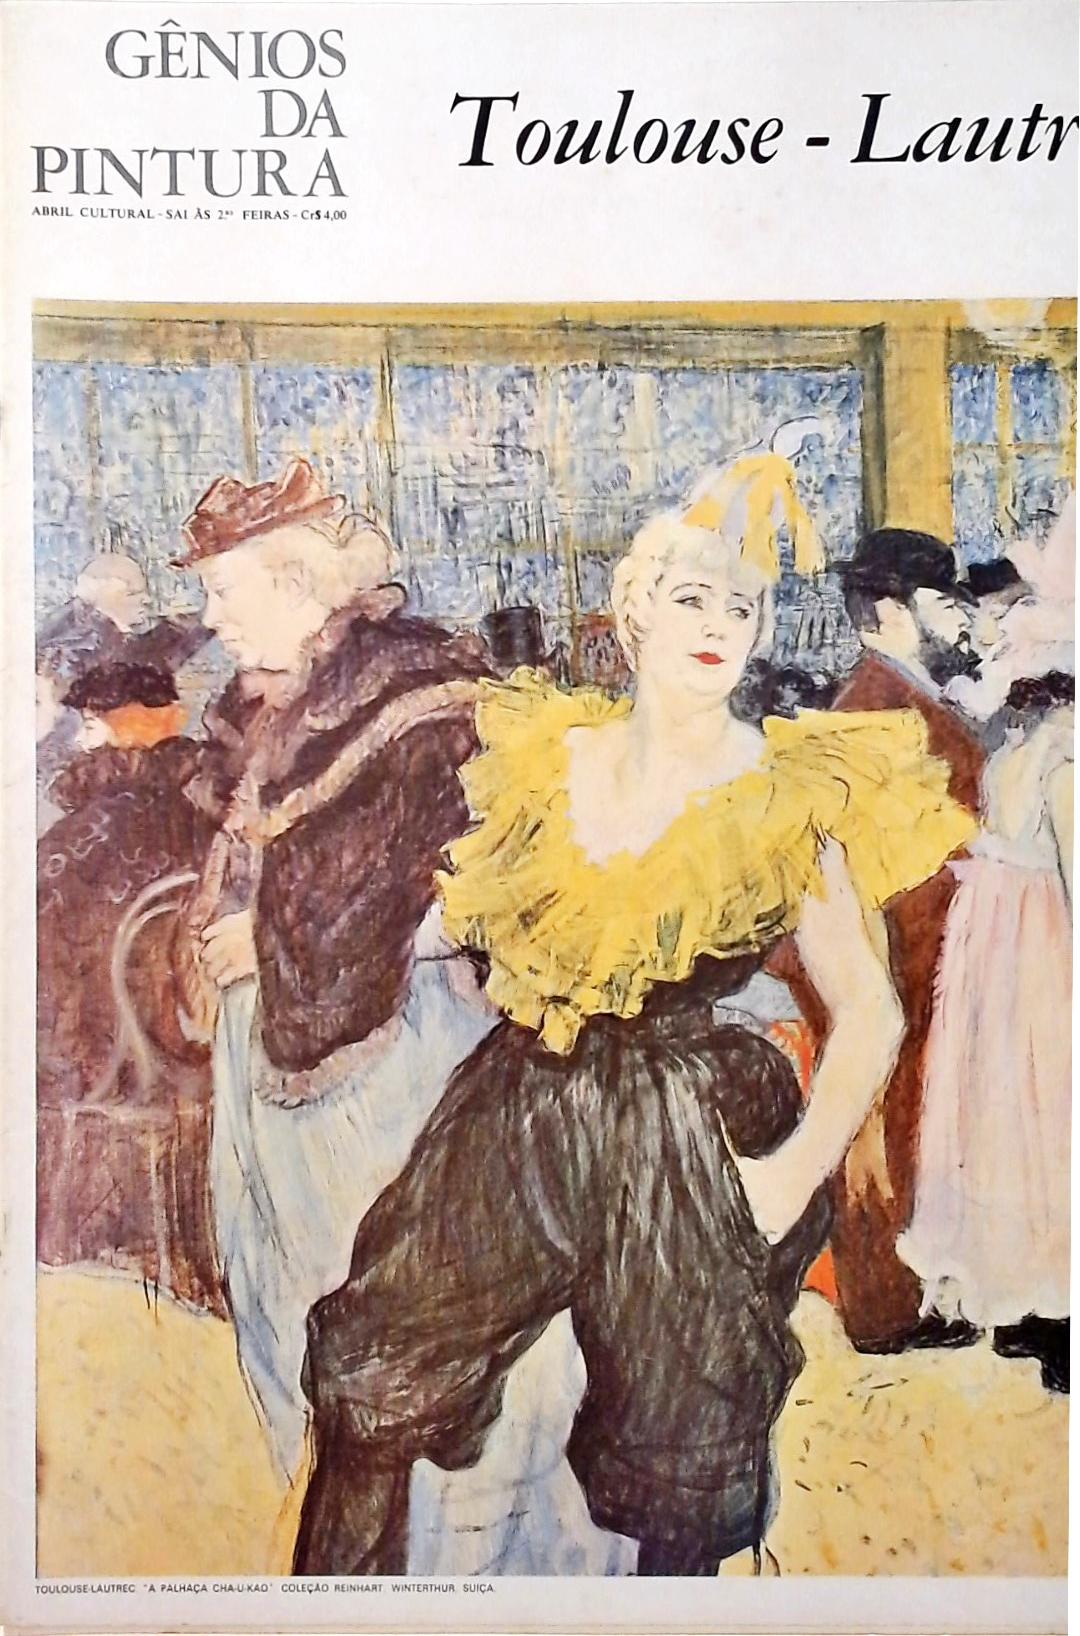 Gênios da Pintura - Toulouse-Lautrec